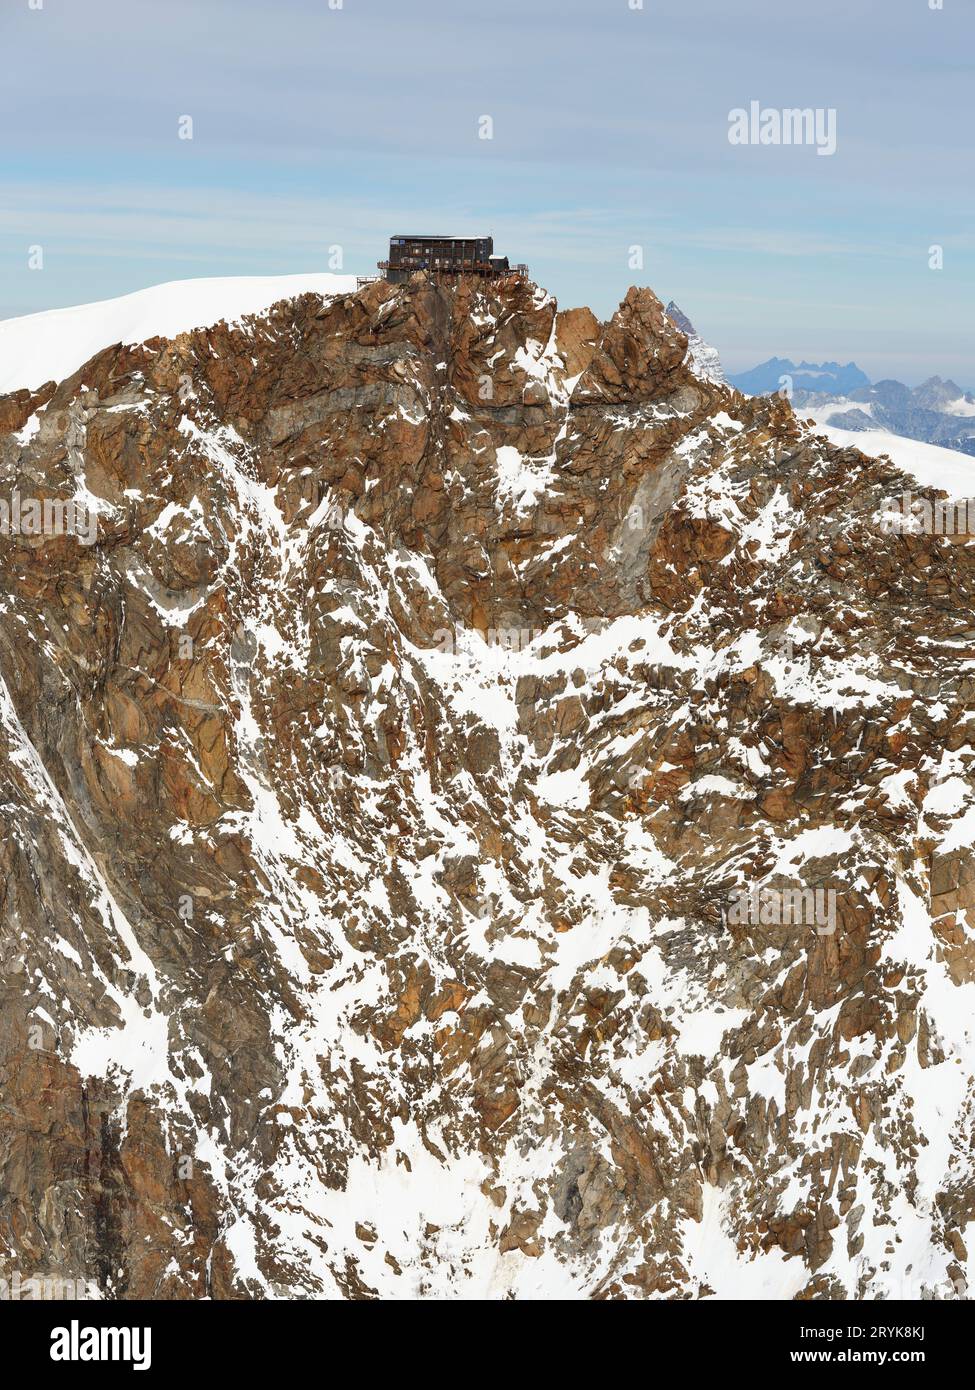 LUFTAUFNAHME. Capanna Regina Margherita ist die höchste Berghütte Europas auf 4554 m Höhe auf dem Gipfel der Punta Gnifetti (Signalkuppe). Italien. Stockfoto